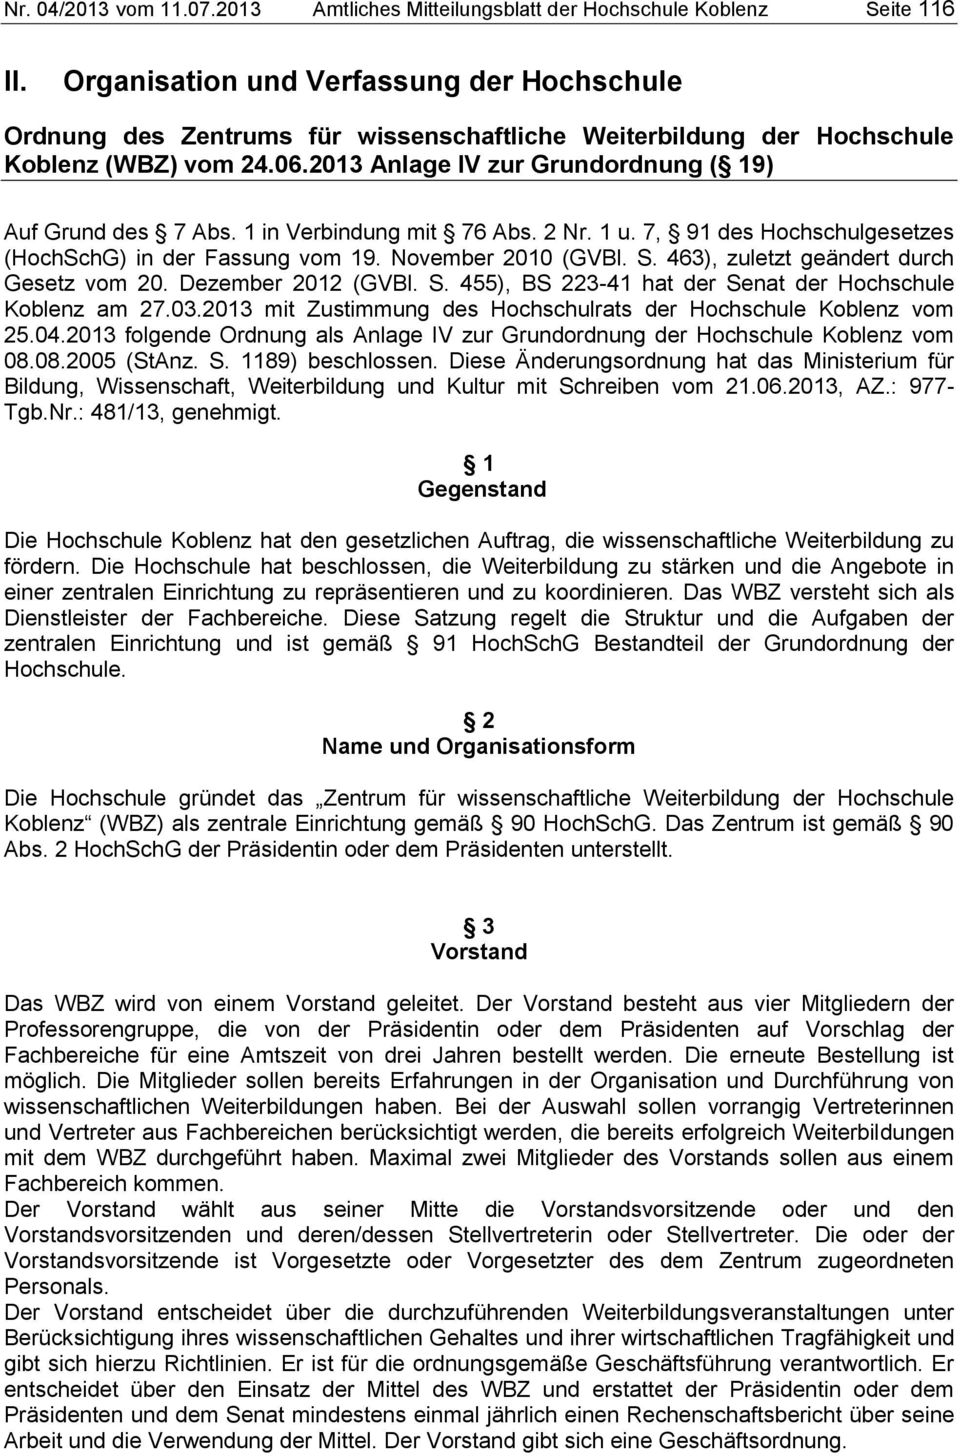 1 in Verbindung mit 76 Abs. 2 Nr. 1 u. 7, 91 des Hochschulgesetzes (HochSchG) in der Fassung vom 19. November 2010 (GVBl. S. 463), zuletzt geändert durch Gesetz vom 20. Dezember 2012 (GVBl. S. 455), BS 223-41 hat der Senat der Hochschule Koblenz am 27.